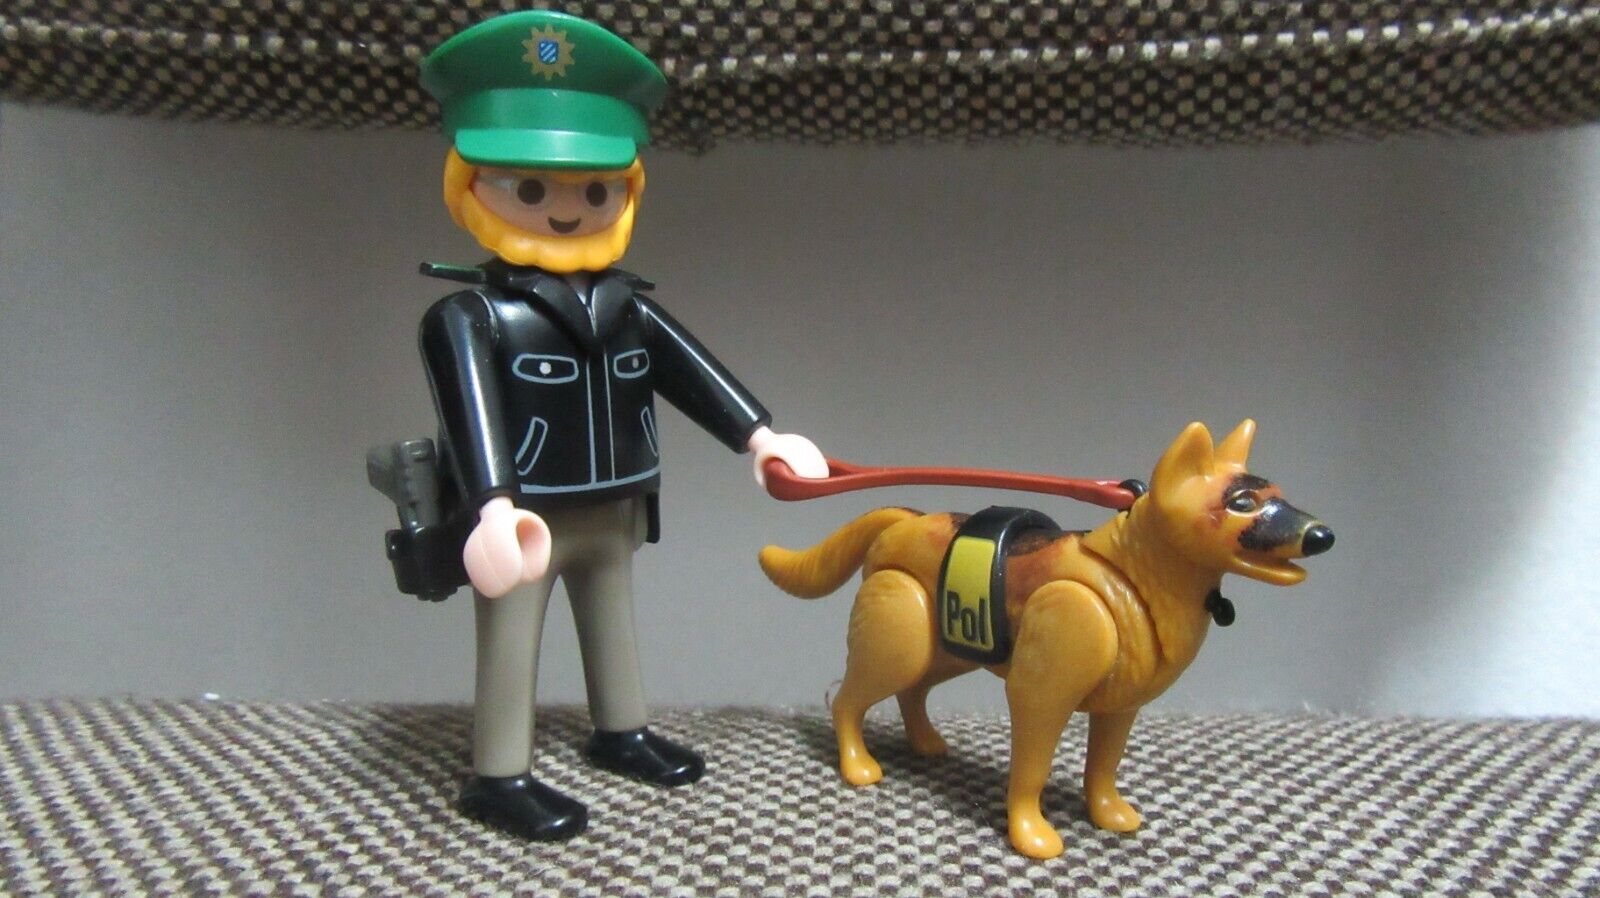 Playmobil - Policia - Oficial Agente con Perro - 3984 - (COMPLETO)